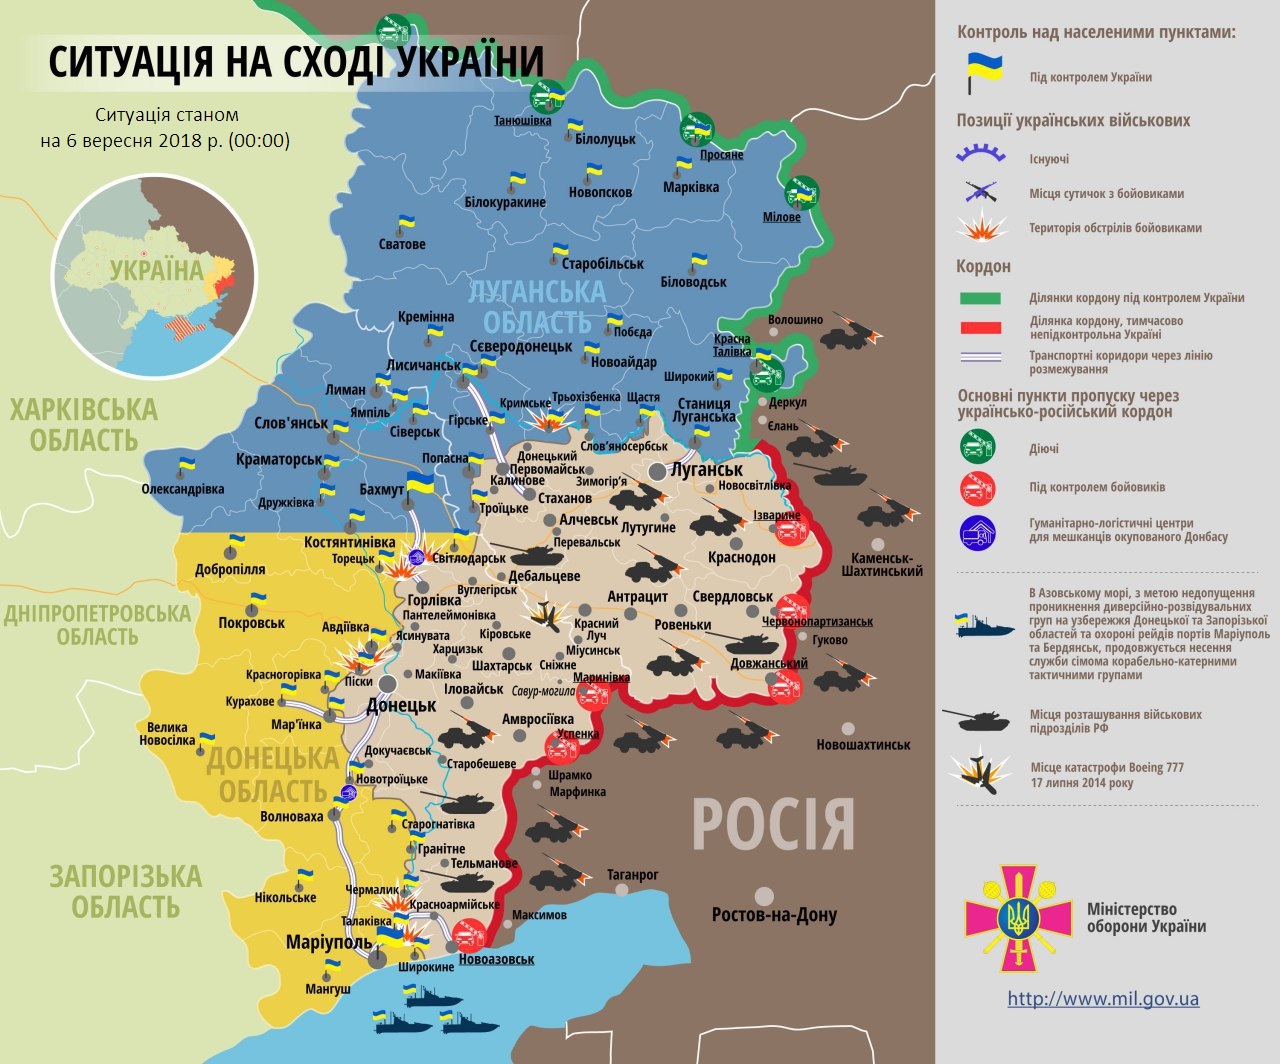 На Донбассе между боевиками и ВСУ произошли смертельные столкновения: боевая сводка и карта ООС от 6 сентября